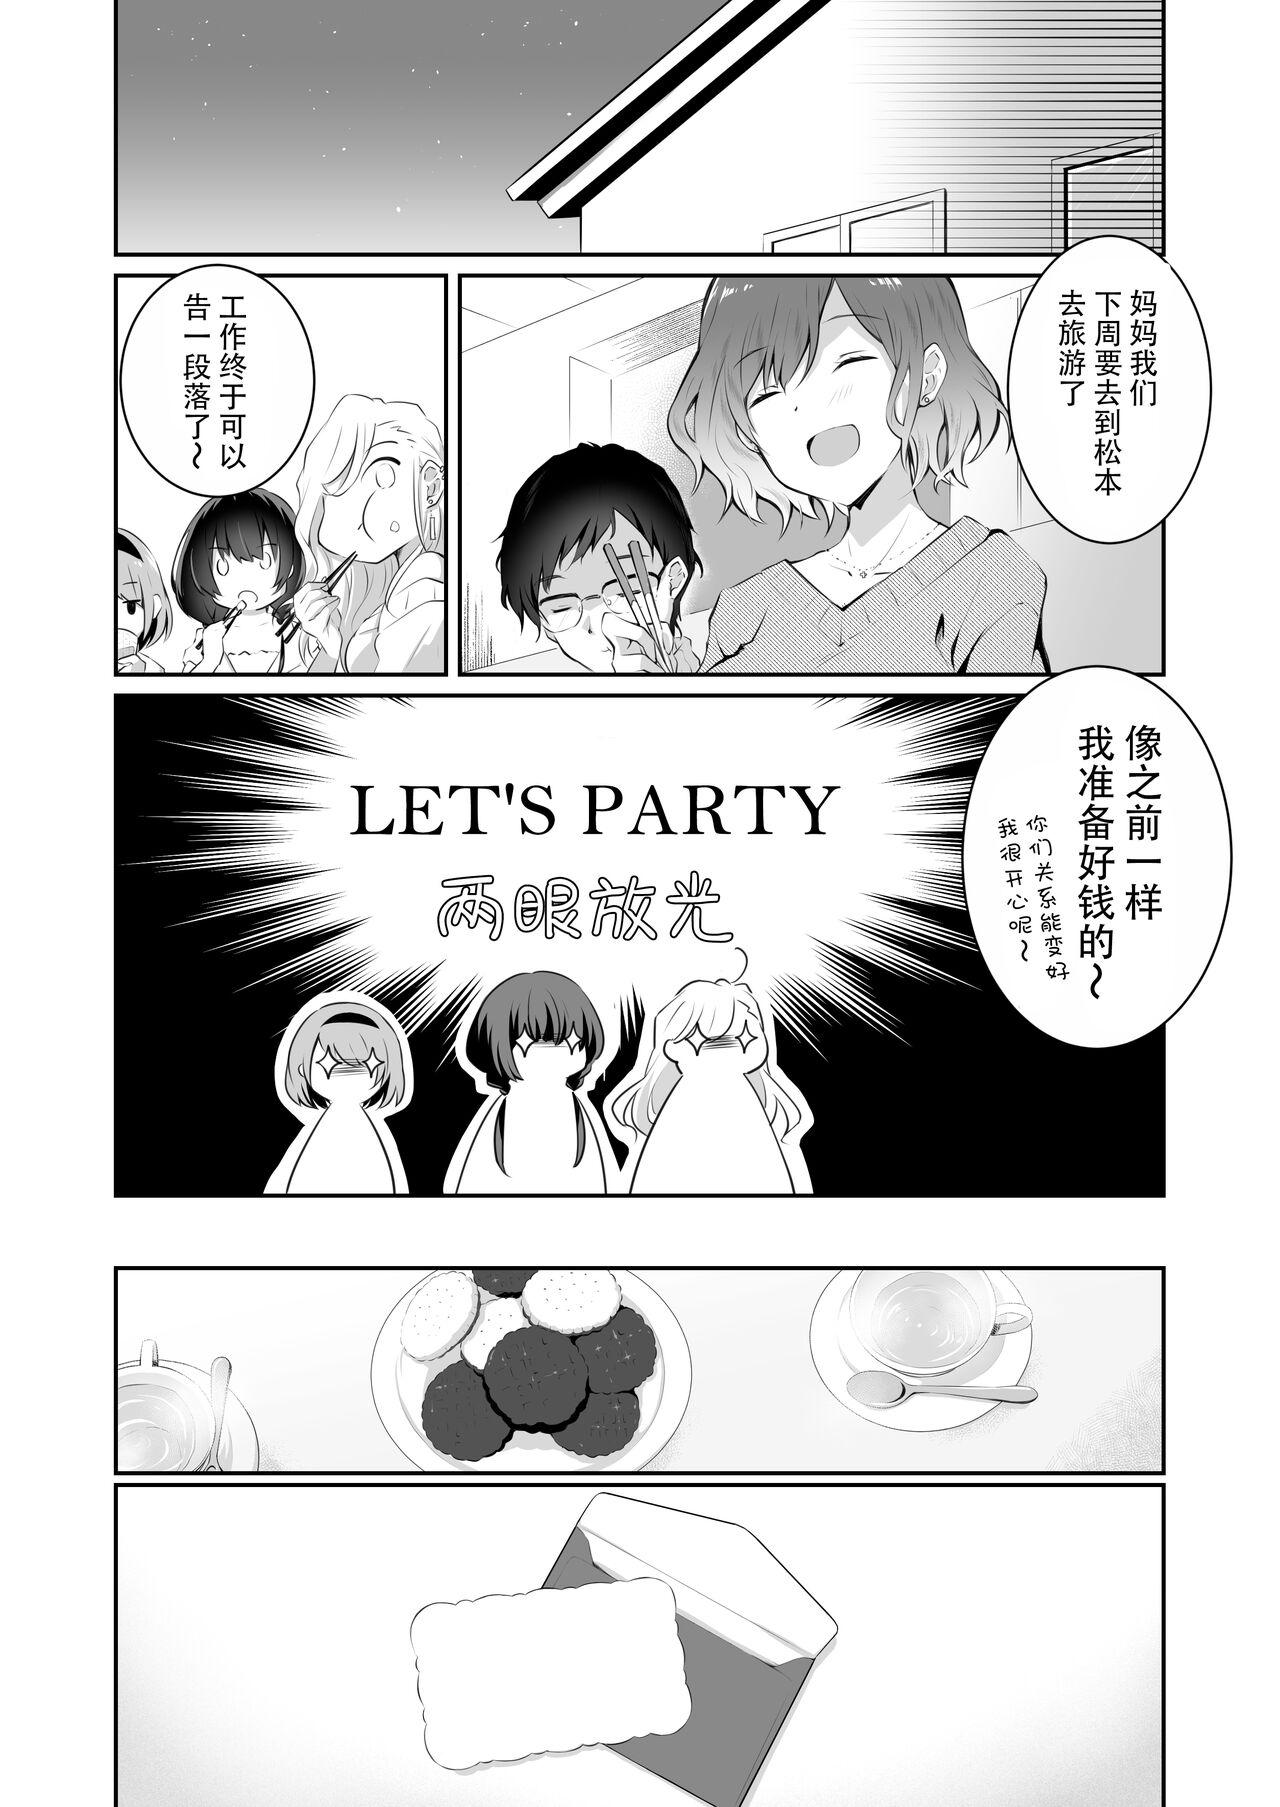 Nurumassage 家庭内売春2 NICOLAI - Original Uncut - Page 11